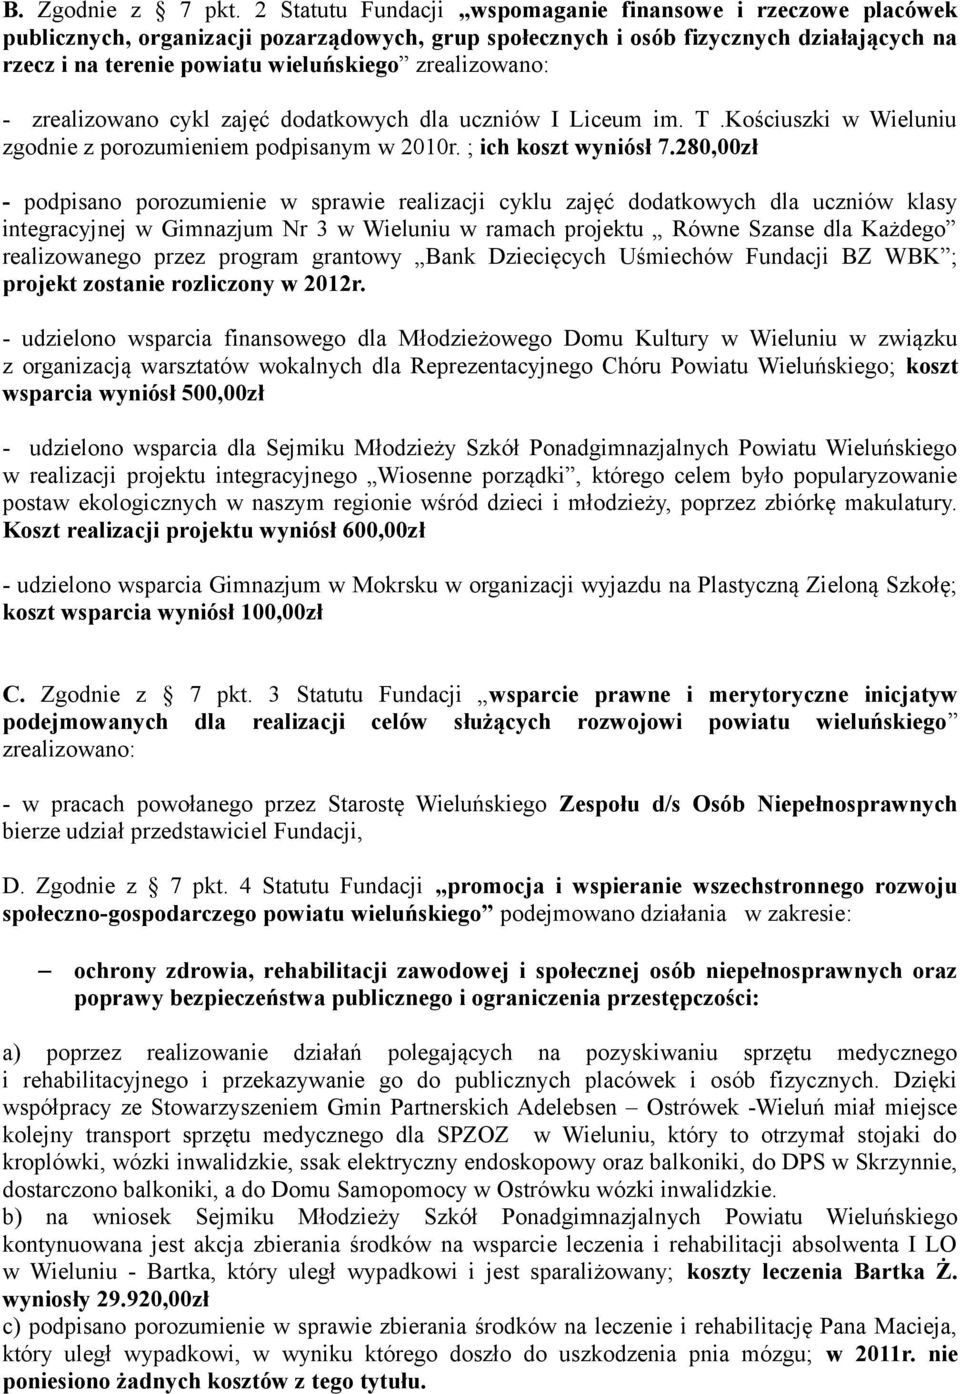 zrealizowano: - zrealizowano cykl zajęć dodatkowych dla uczniów I Liceum im. T.Kościuszki w Wieluniu zgodnie z porozumieniem podpisanym w 2010r. ; ich koszt wyniósł 7.